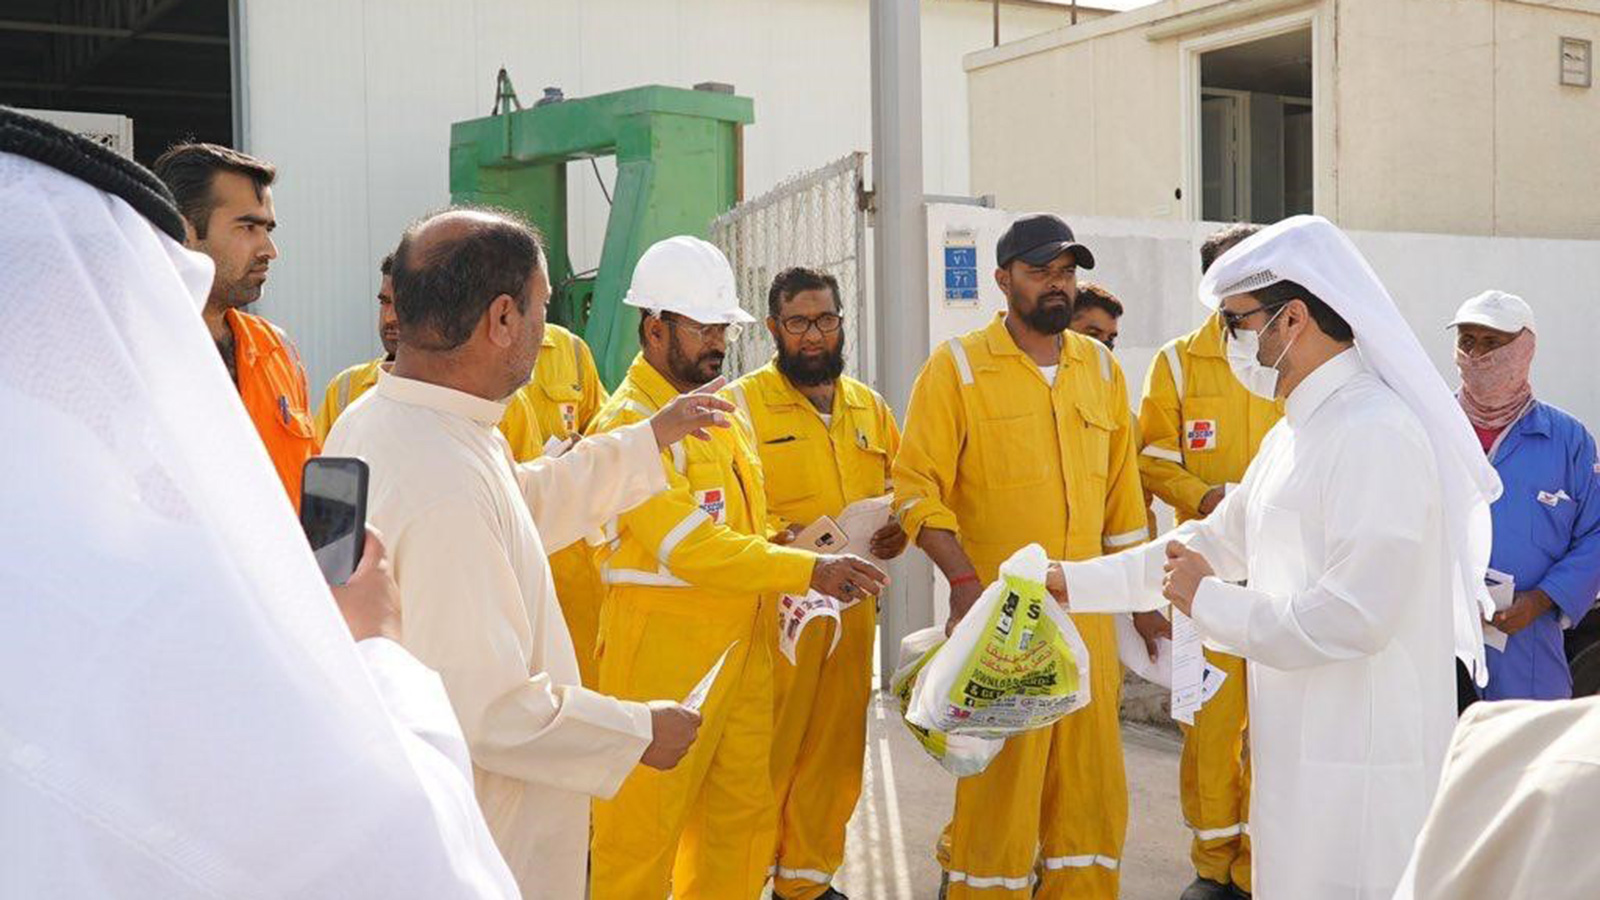 ‪متطوع لأجل قطر تهدف للتوعية ضد مخاطر فيروس كورونا‬ (الجزيرة)